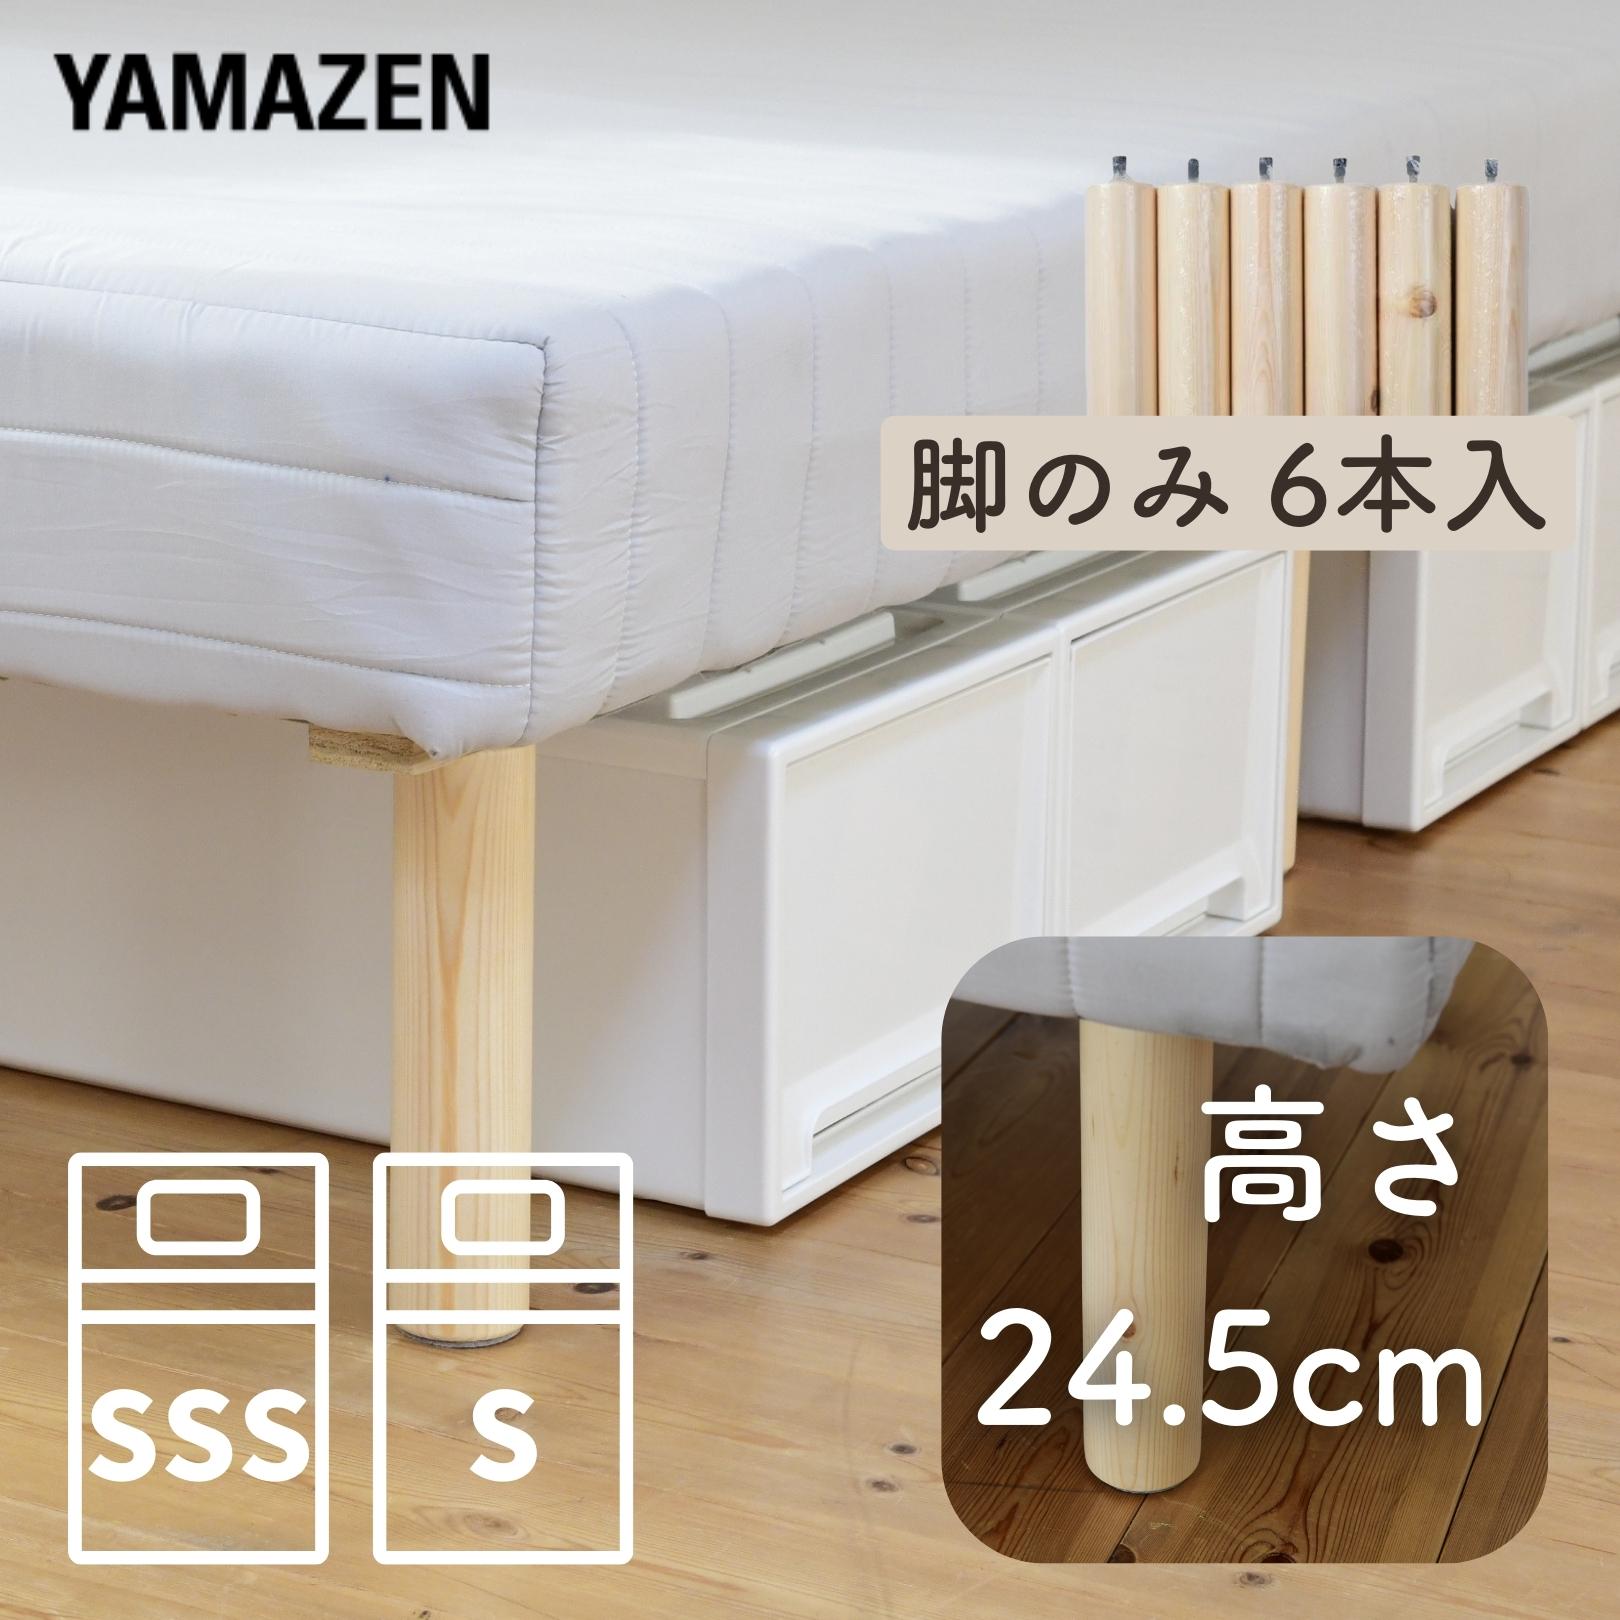 【楽天市場】ベッド下 収納ボックス 2個組 高さ23.5 キャスター付き 